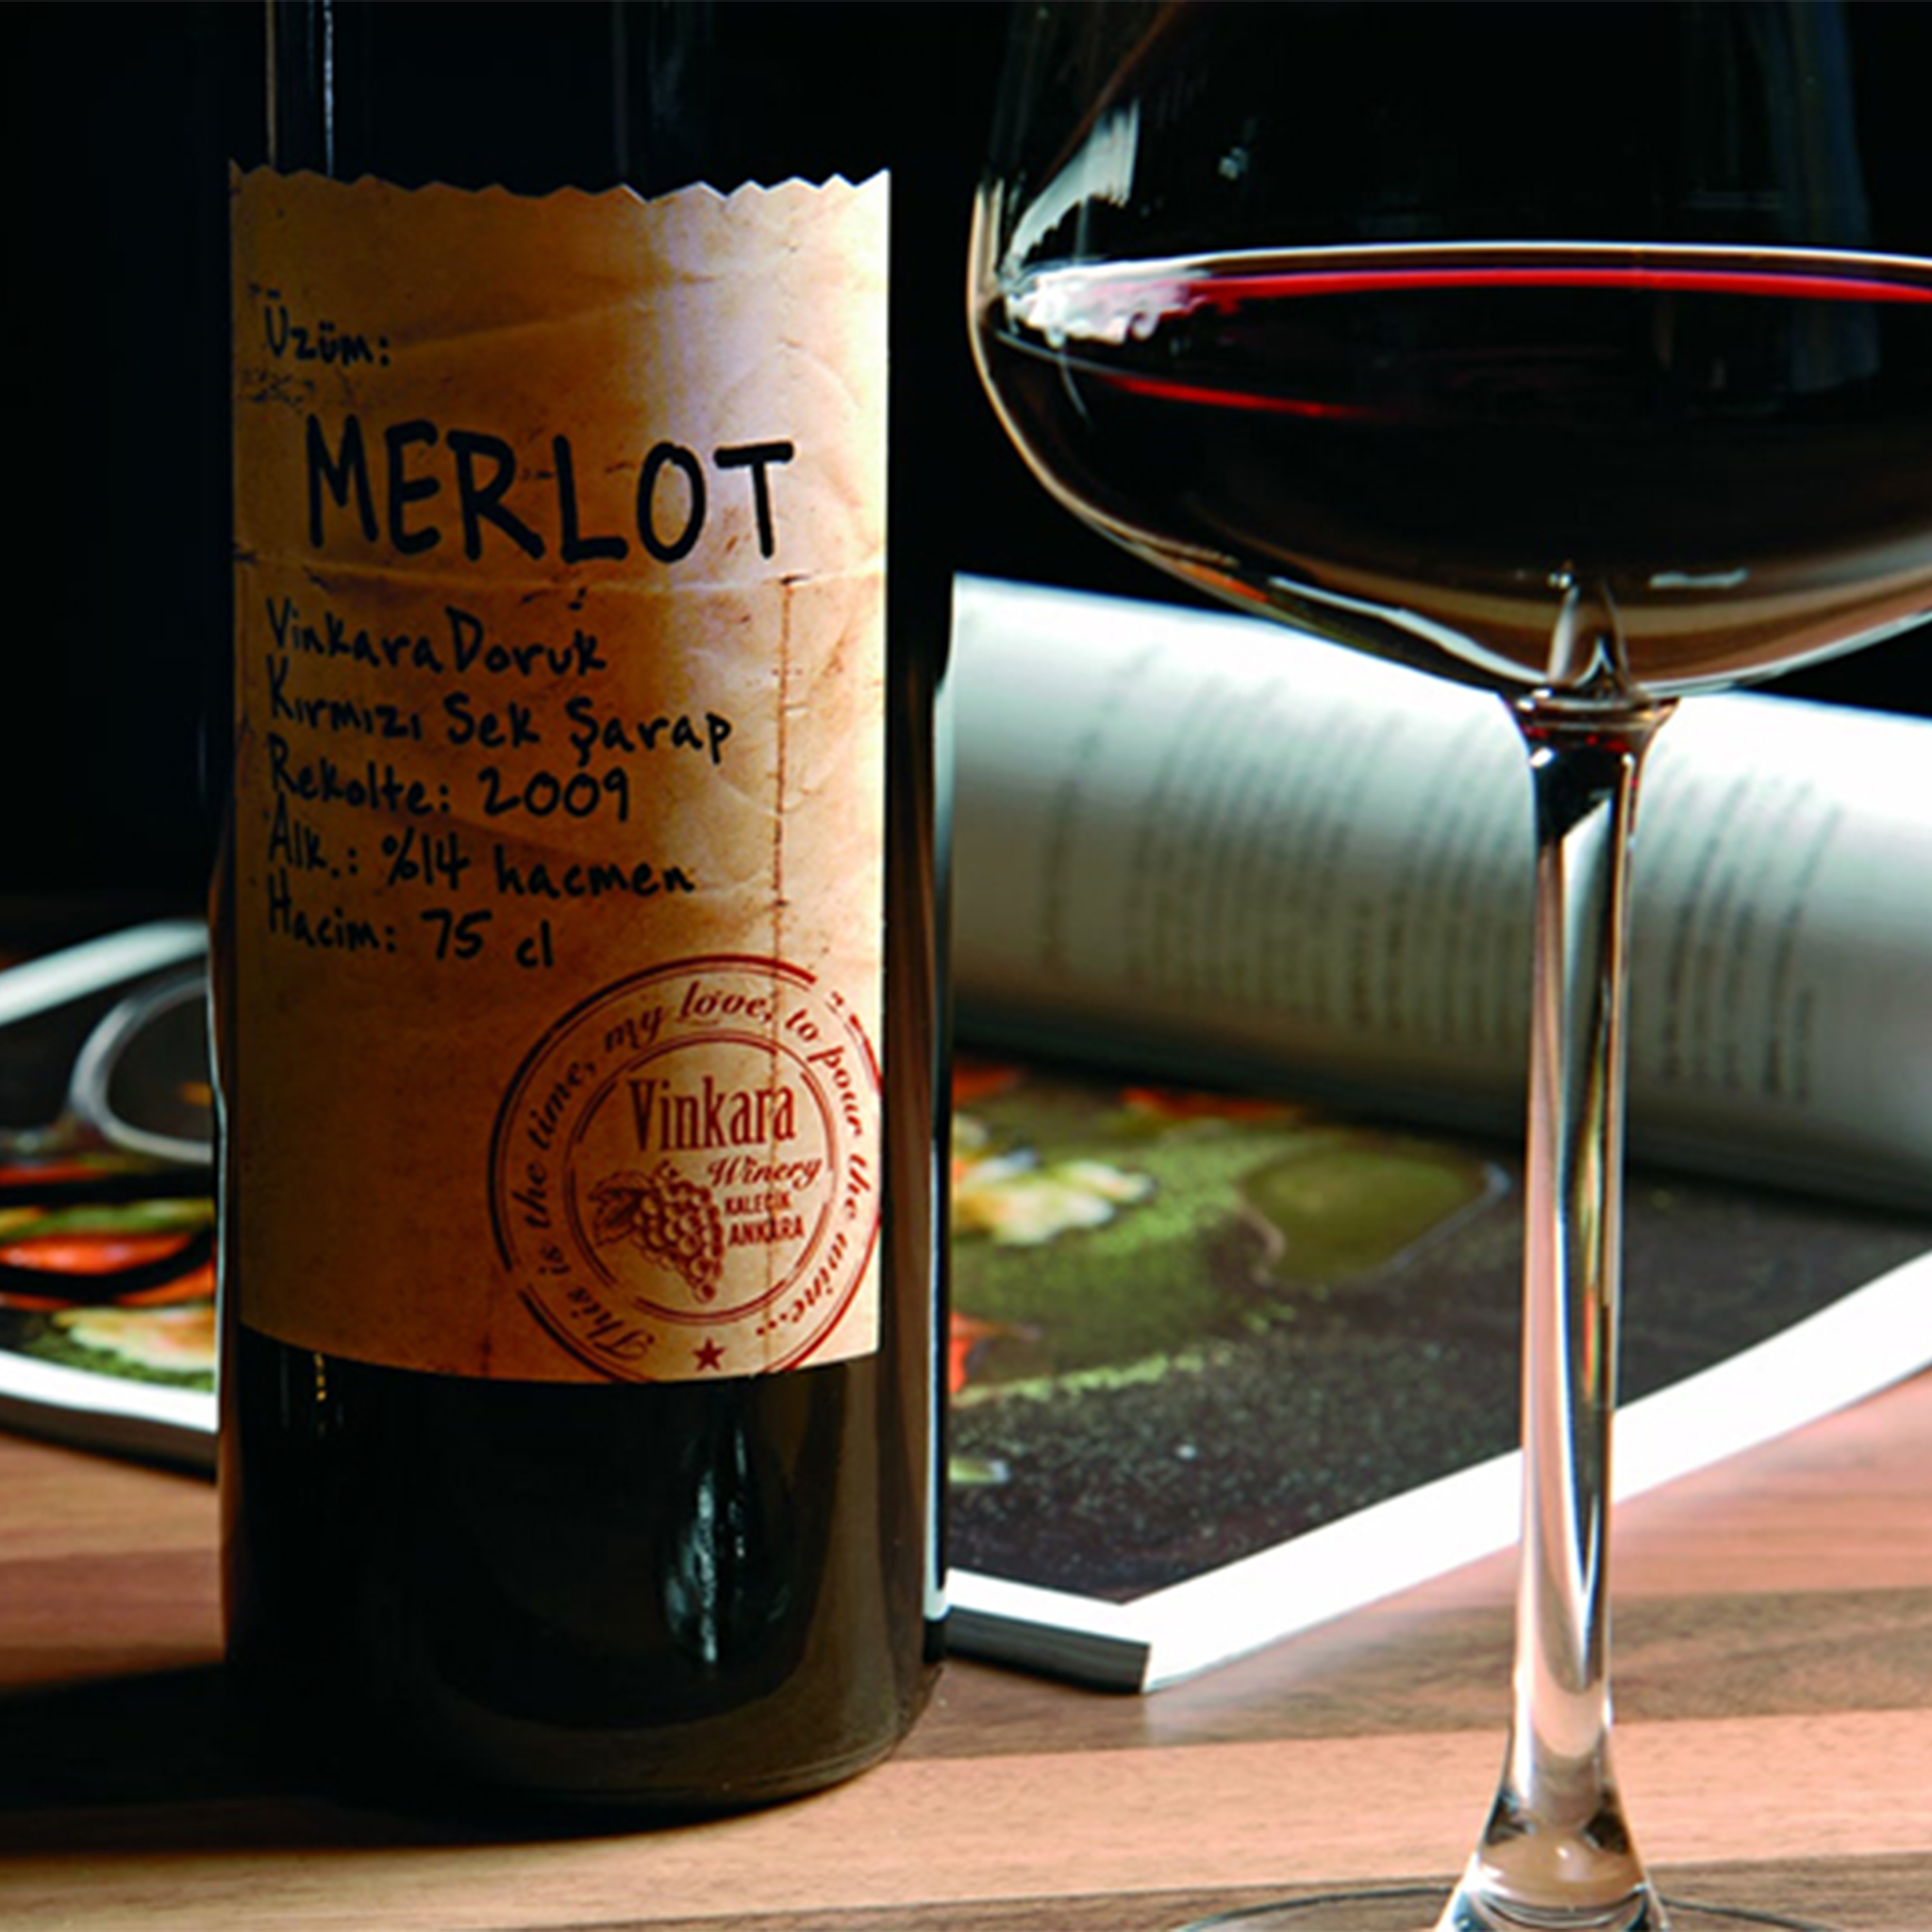 Vinkara Doruk Merlot 750ml Kırmızı Sek Şarap